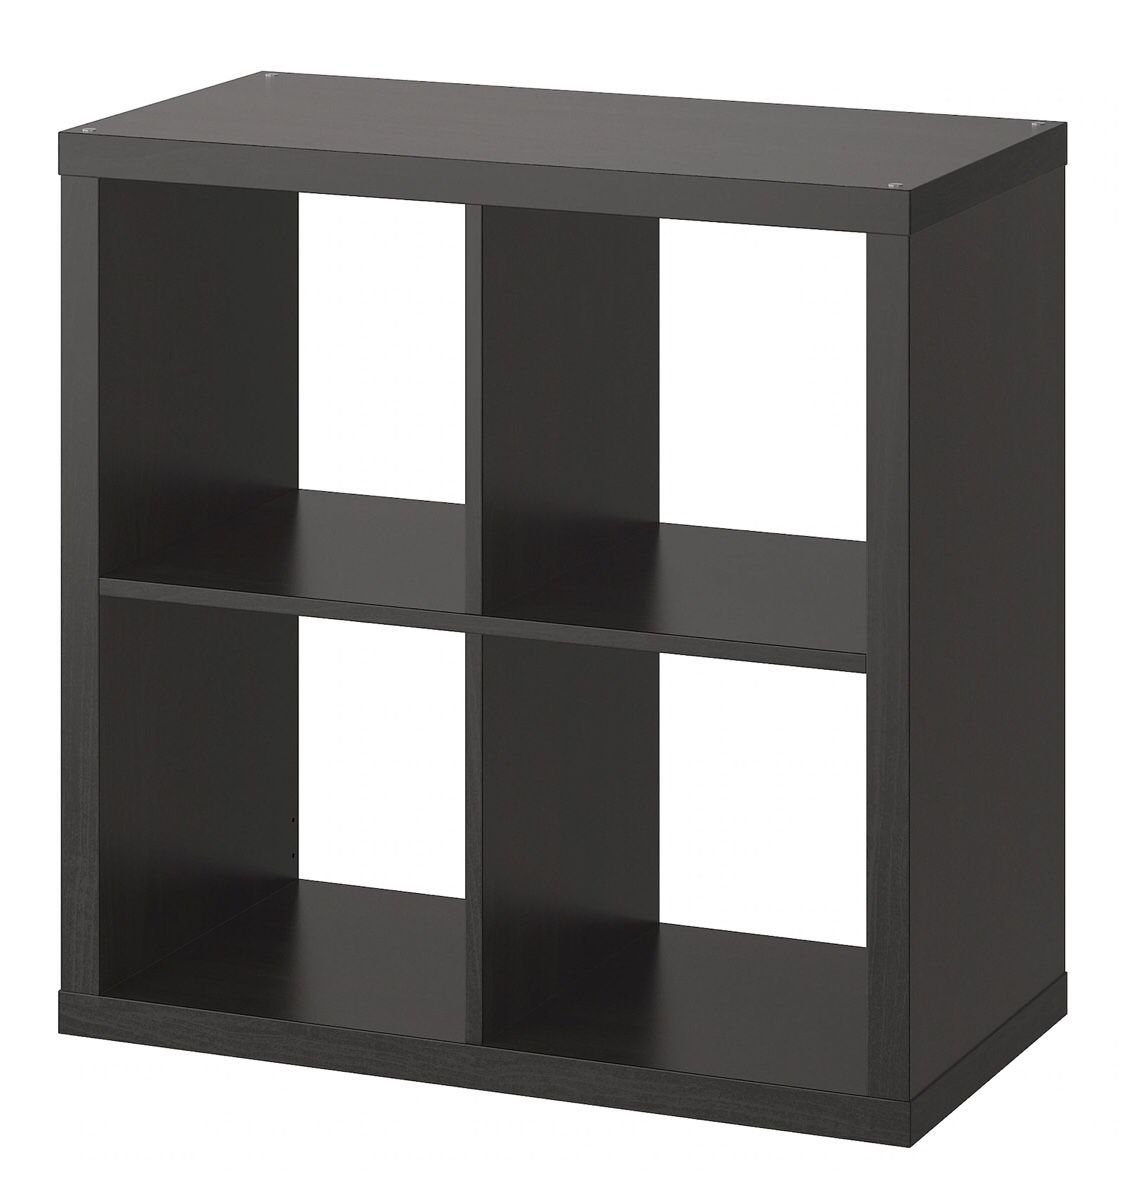 Ikea Kallax shelf unit with Four Fabric Storage Bins